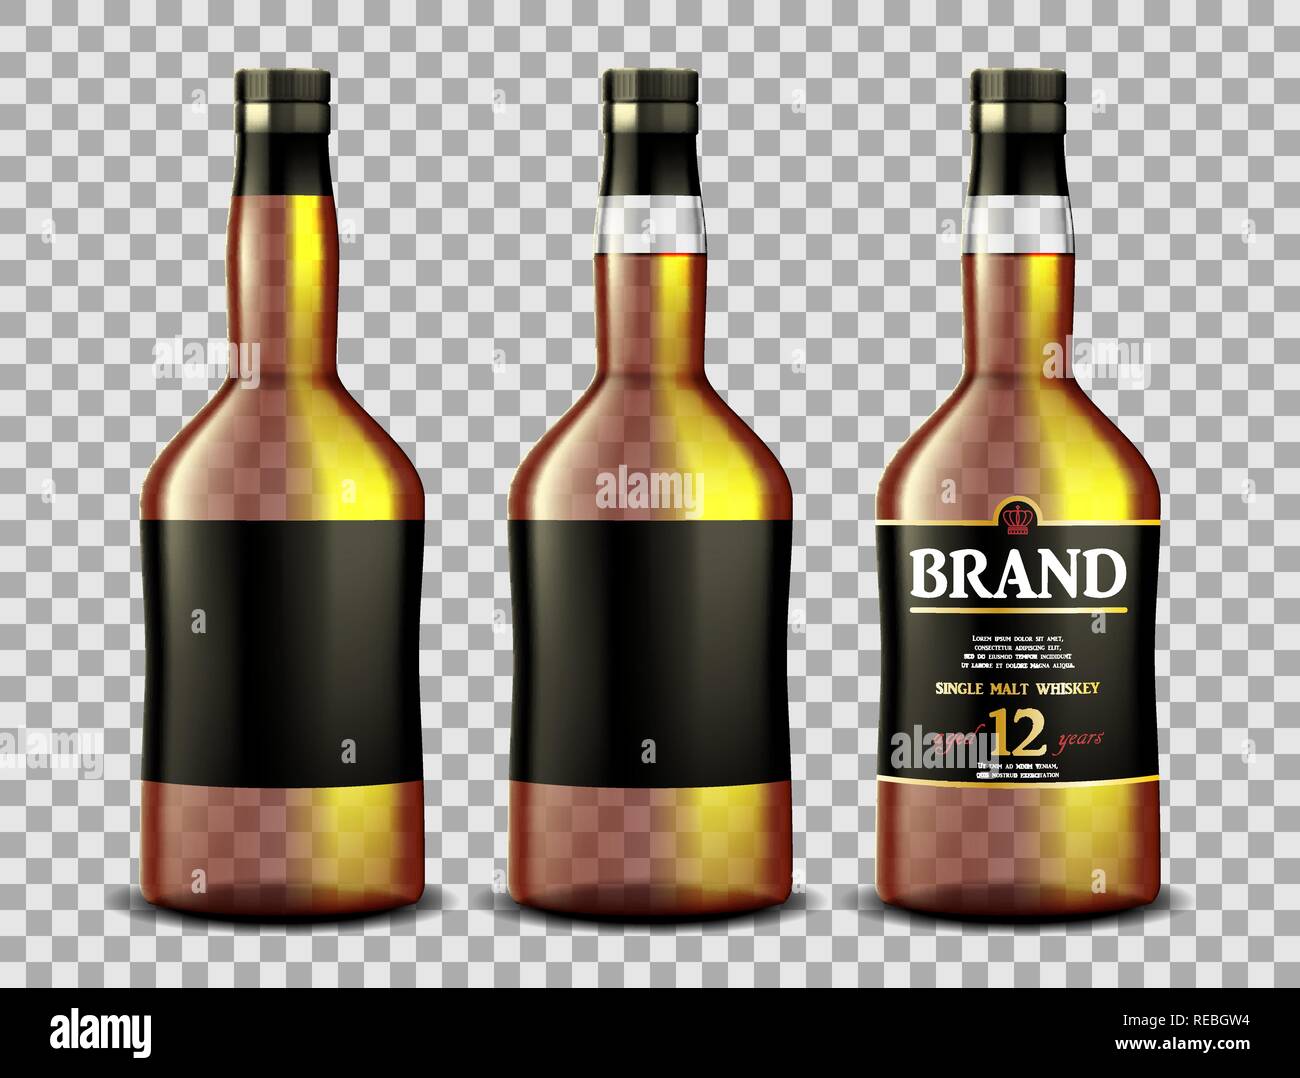 Satz von Whiskey, Rum, Bourbon oder cognac Glas Flasche mit Alkohol und ohne. Transparente Flaschen trinken in einem realistischen Stil. Vector 3d-Darstellung Stock Vektor